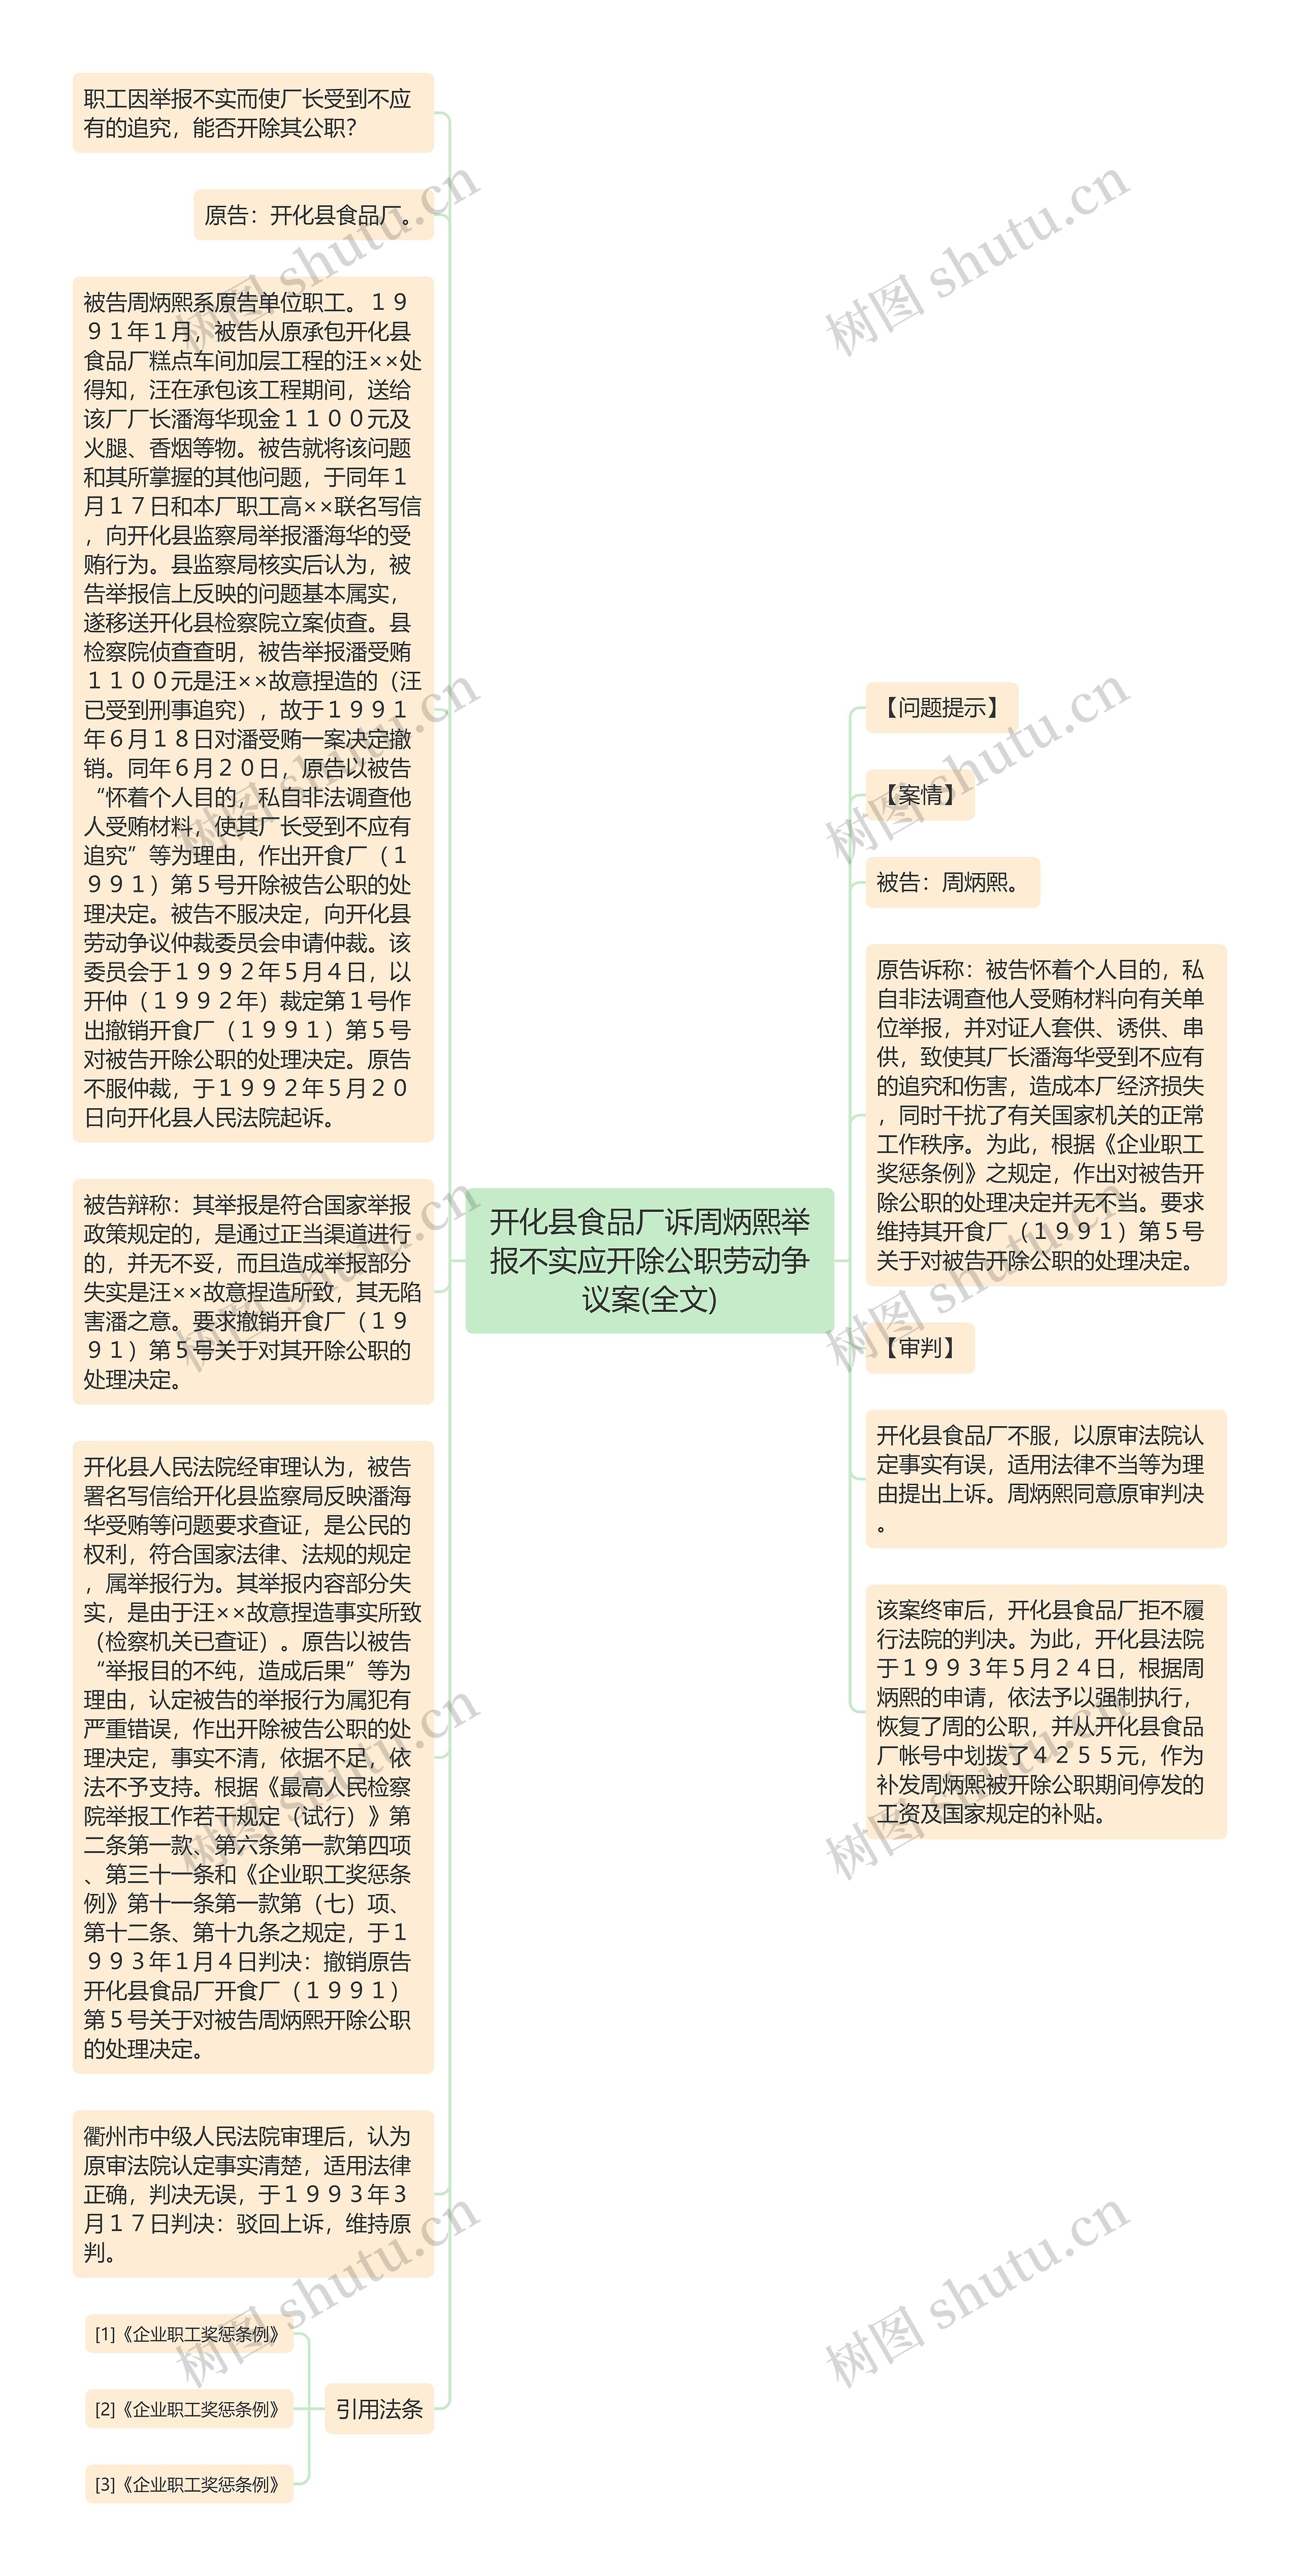 开化县食品厂诉周炳熙举报不实应开除公职劳动争议案(全文)